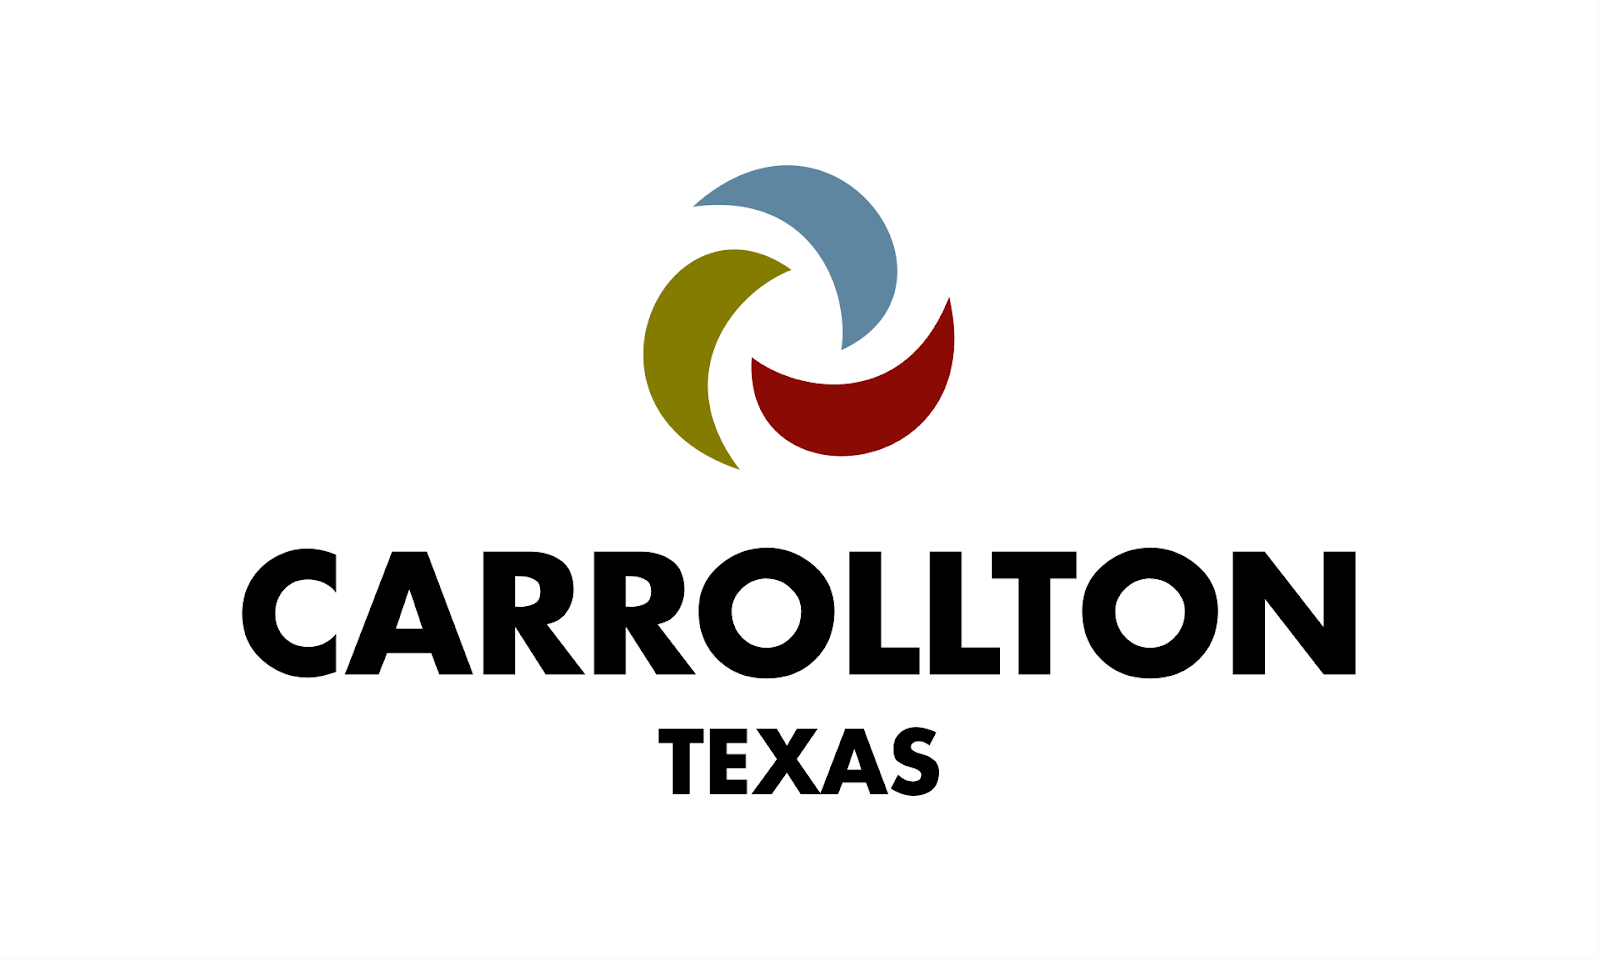  AC repair Carrollton, Carrollton HVAC service, Carrollton plumber, Air Conditioner service Carrollton